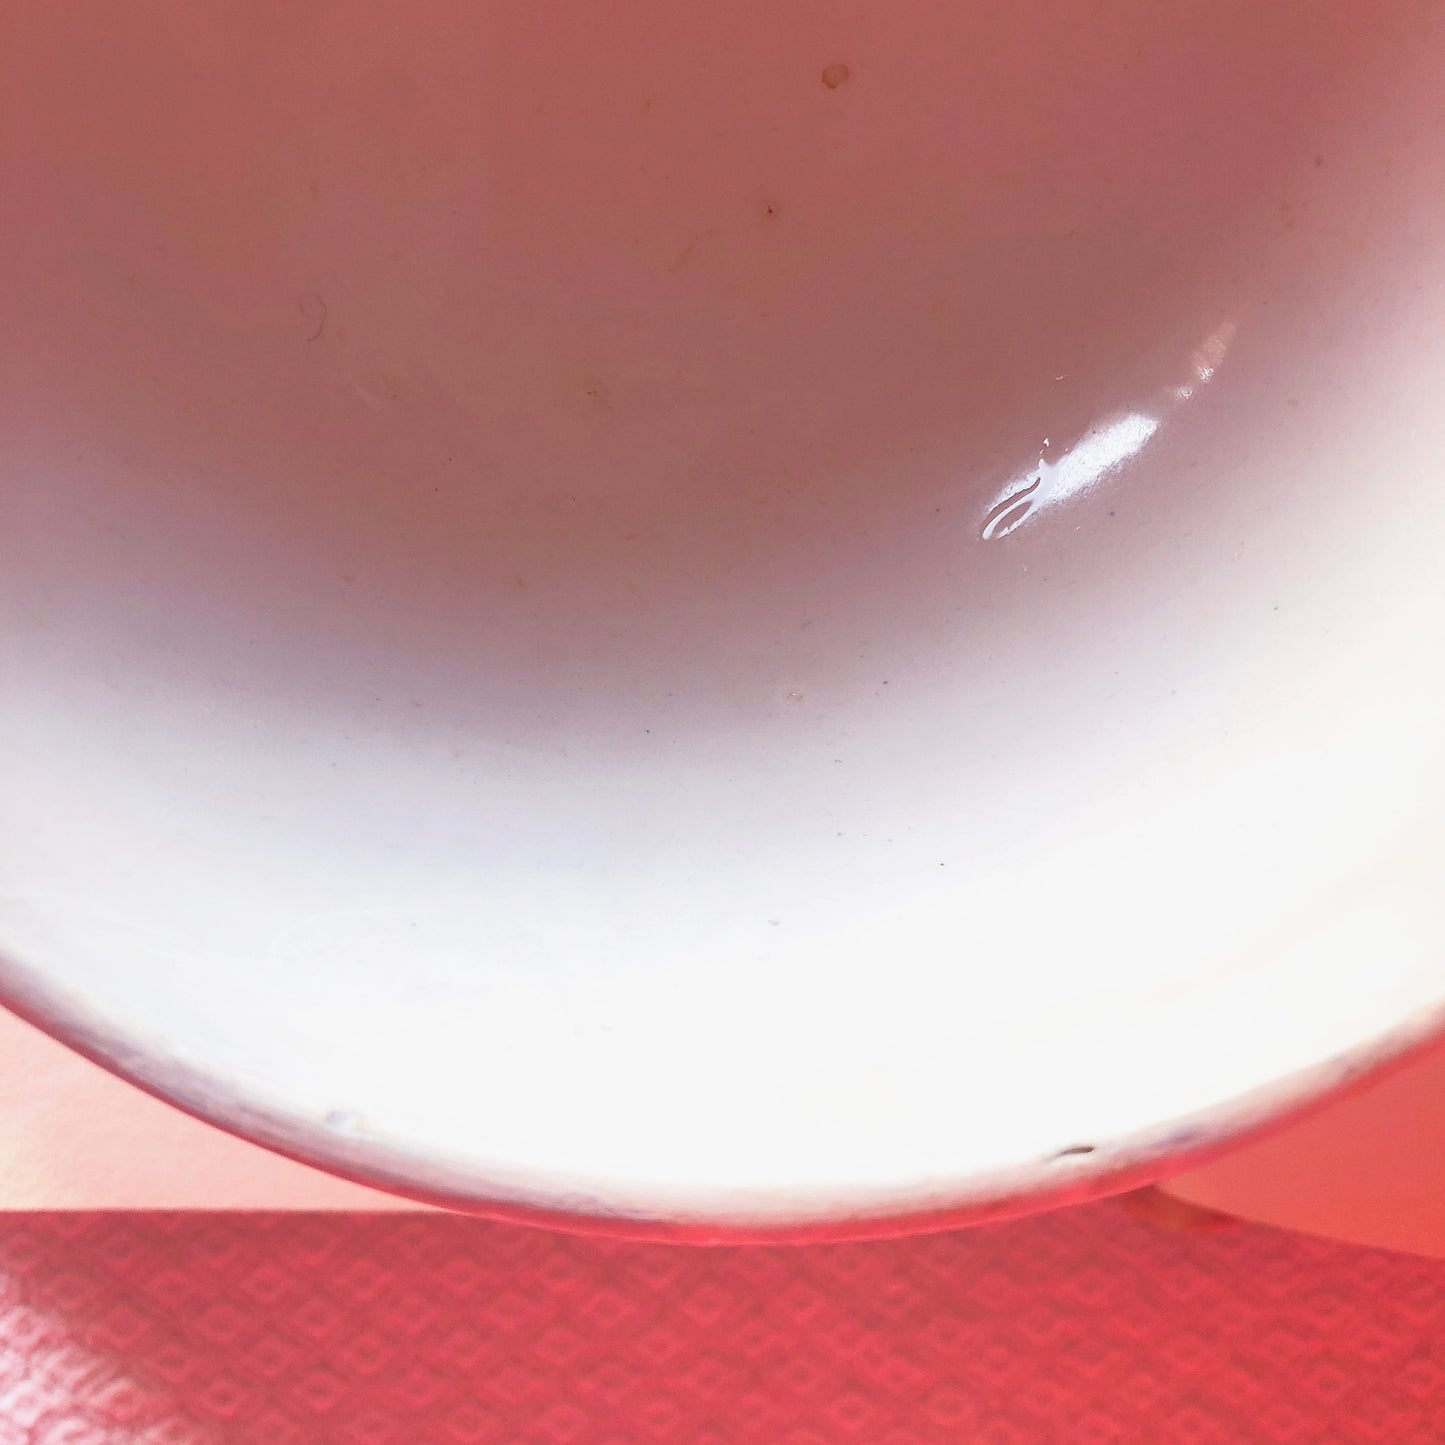 クレイユモントロー HBCM Béarn バスク柄カフェオレボウル「ボルドー・ダークブルー」フランスアンティーク・食器・皿・プレート ブロカント